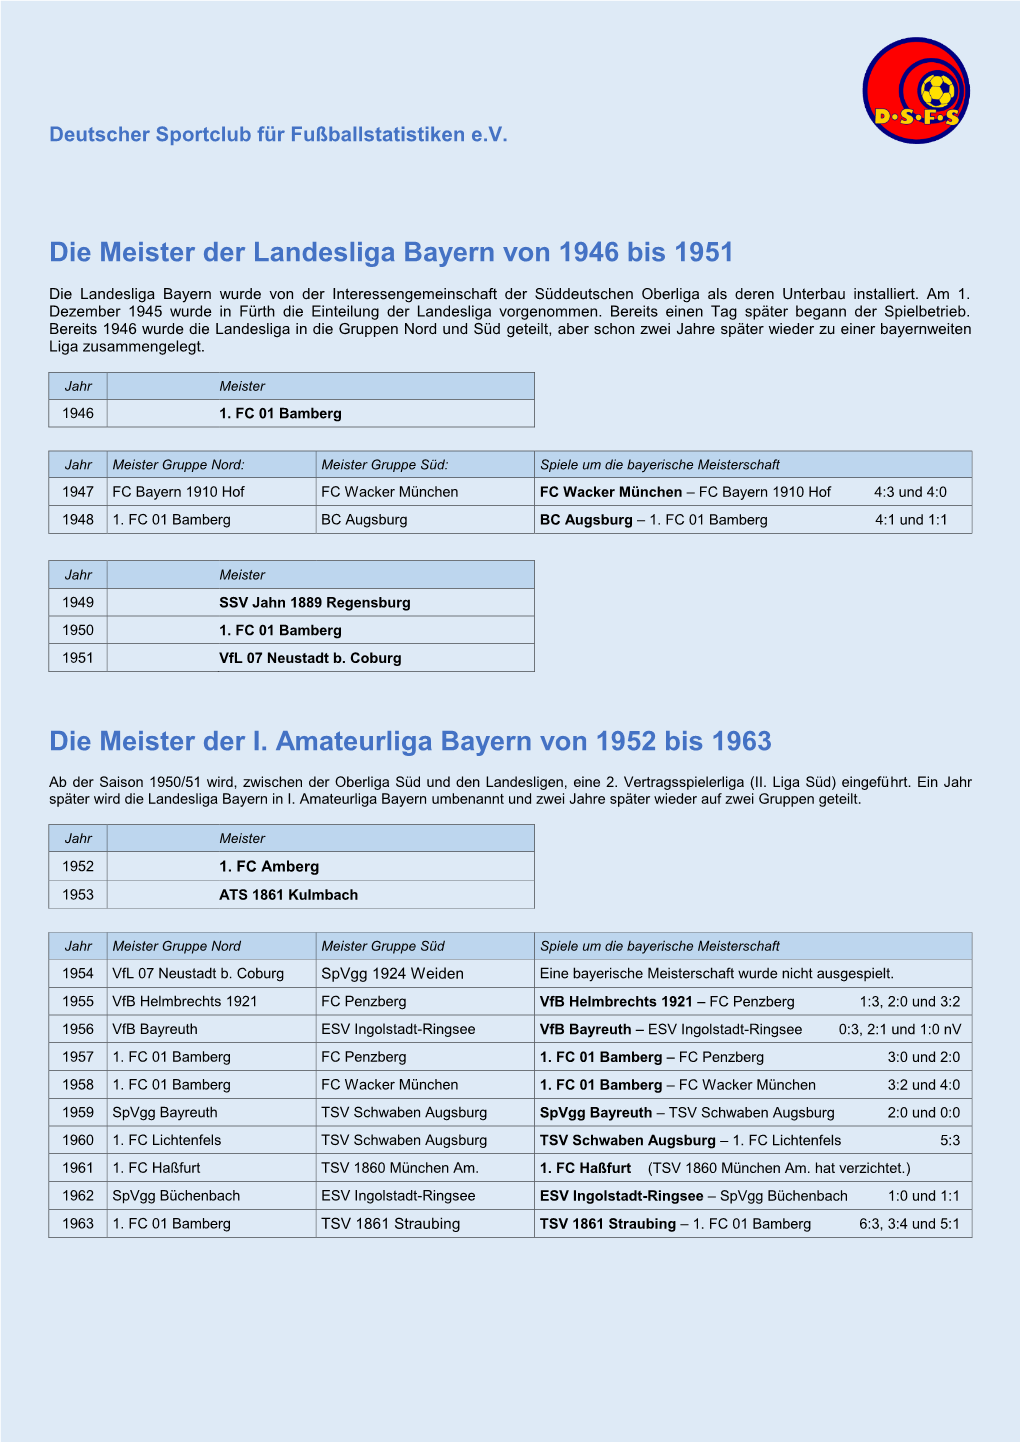 Die Meister Der Landesliga Bayern Von 1946 Bis 1951 Die Meister Der I. Amateurliga Bayern Von 1952 Bis 1963